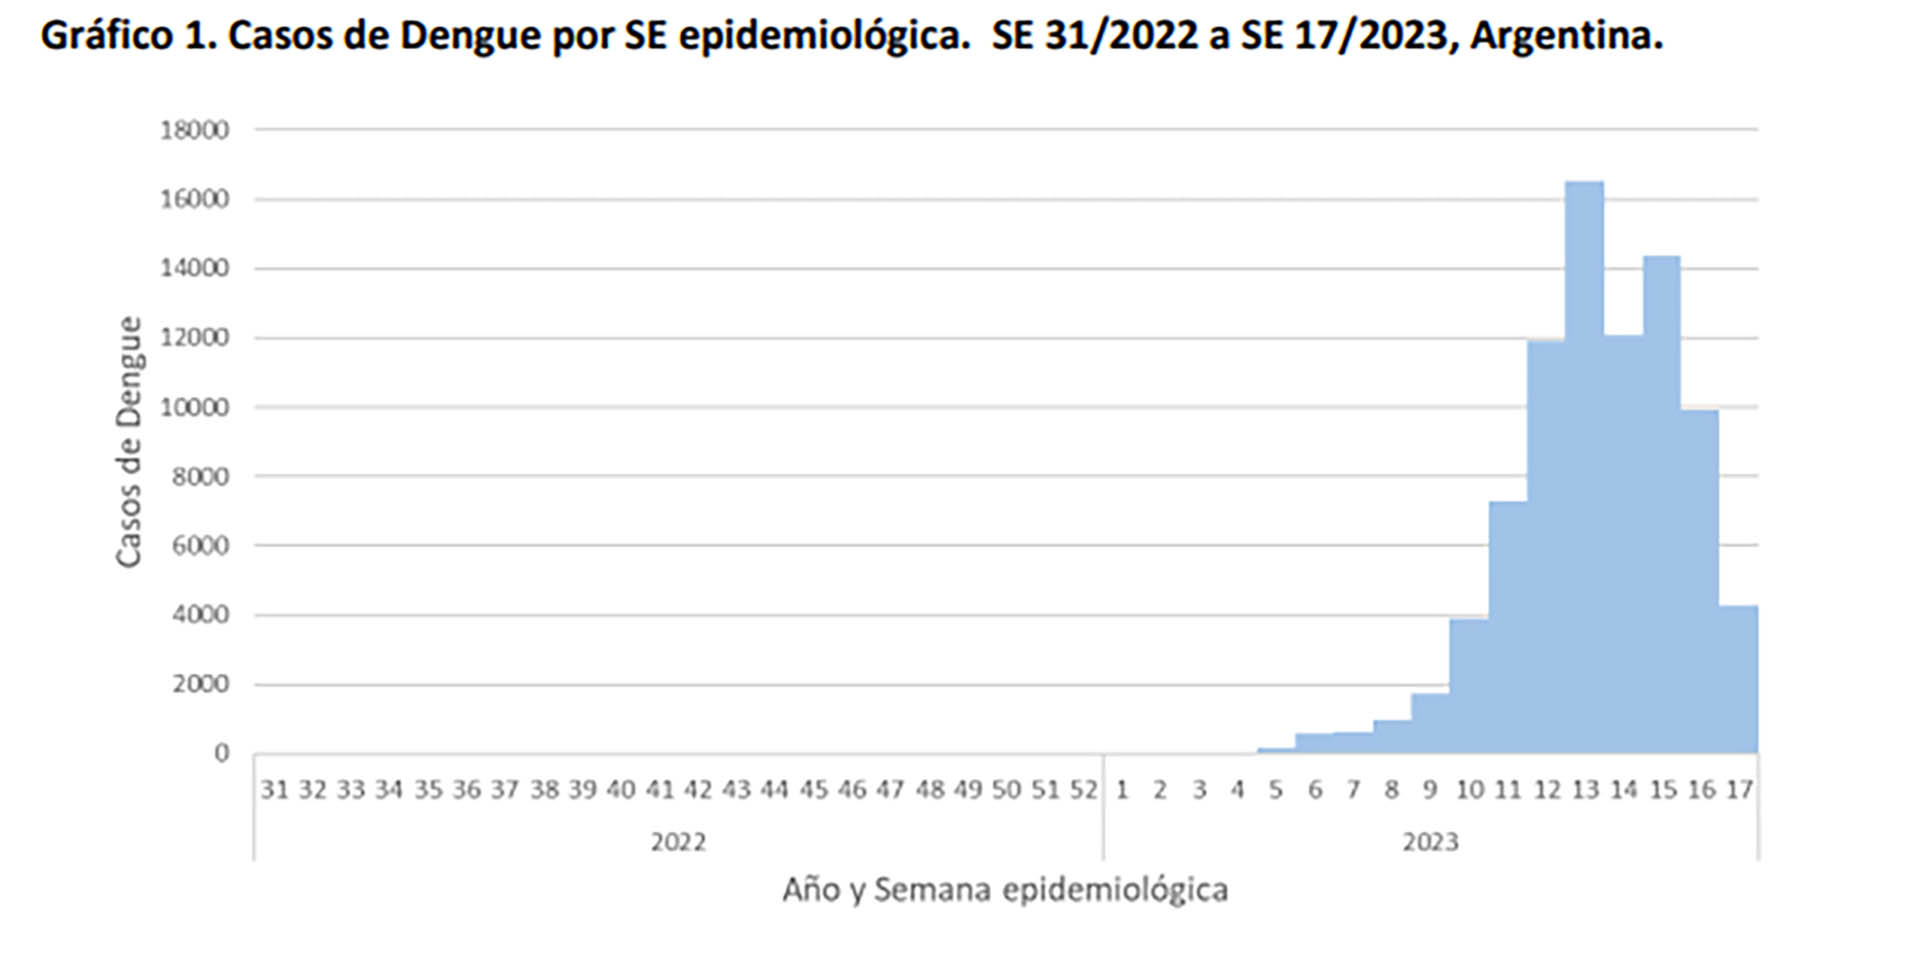 El actual brote de dengue registra los indicadores más altos de casos de la historia (Boletín Epidemiológico Nacional)